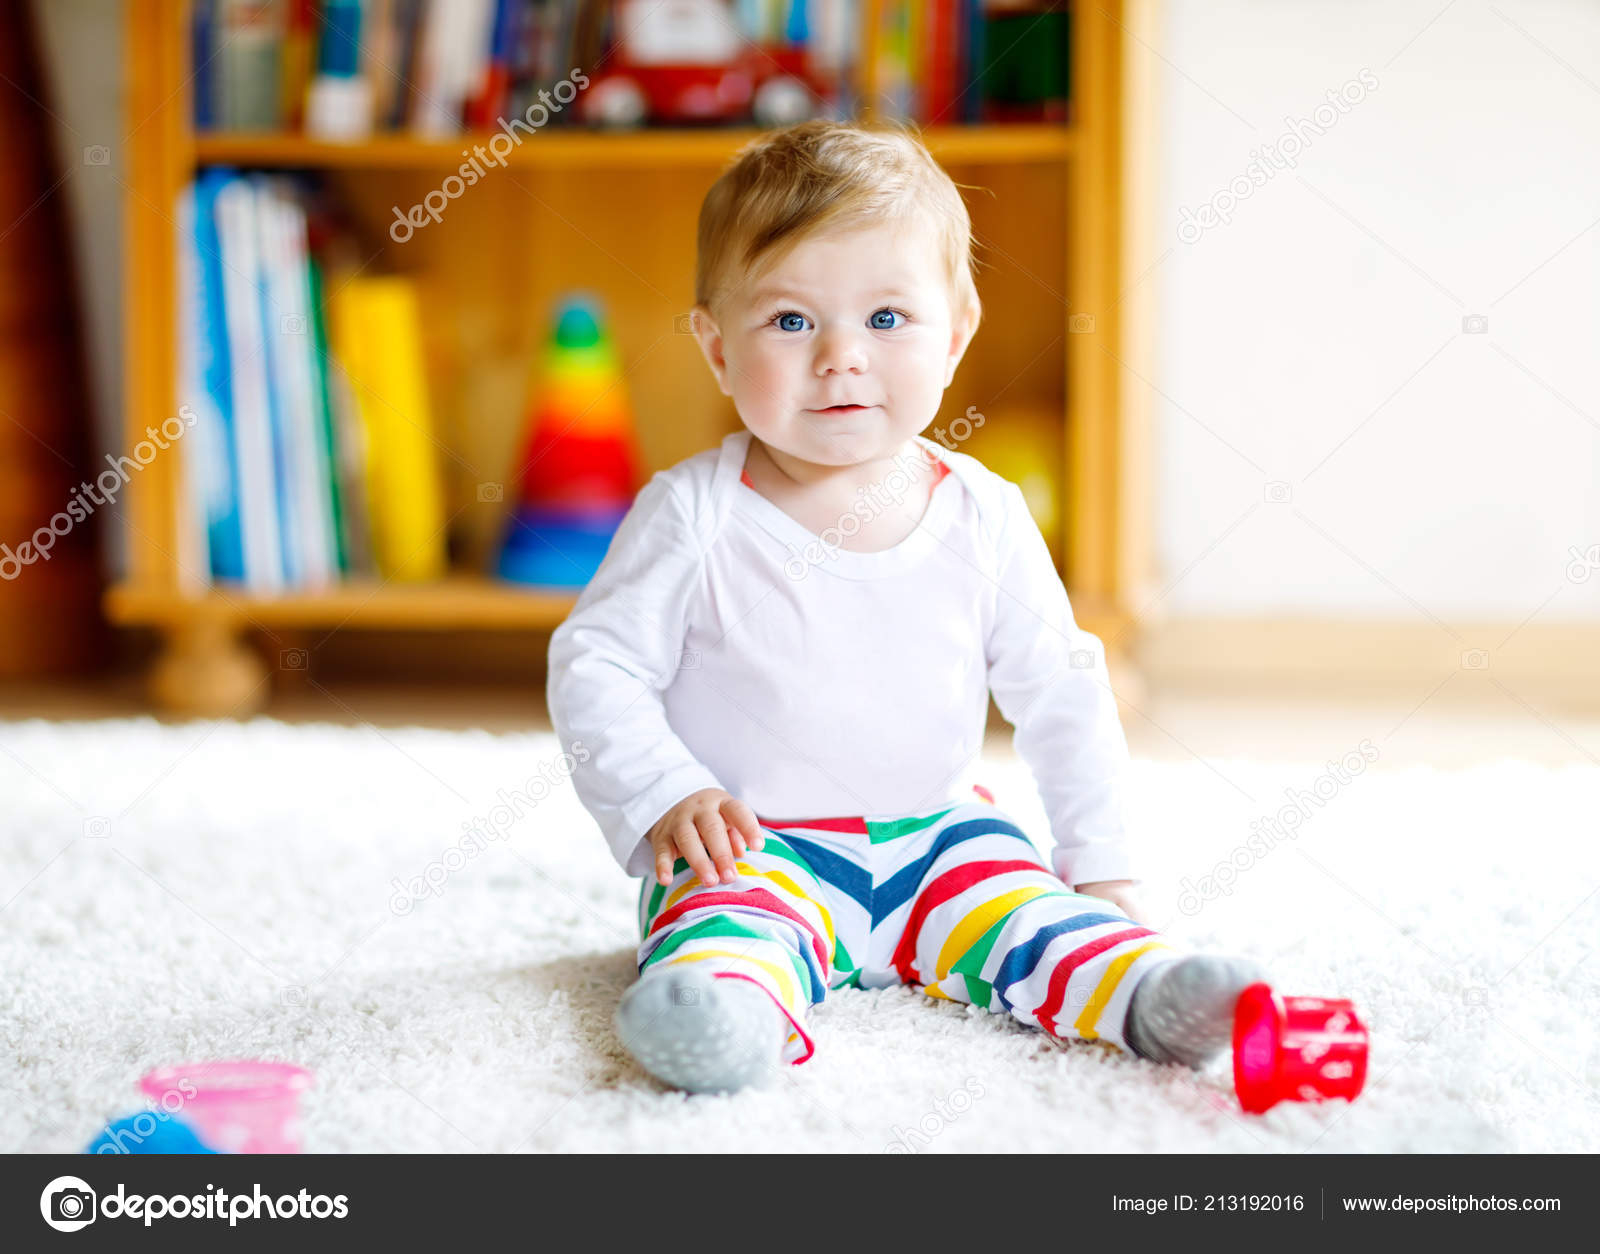 Cute Little Asian 2 - 3 Anos De Idade Criança Menino Criança Se Divertindo  Brincando Com Blocos De Plástico Coloridos Dentro De Casa No Jogo Escola /  Creche / Sala De Estar